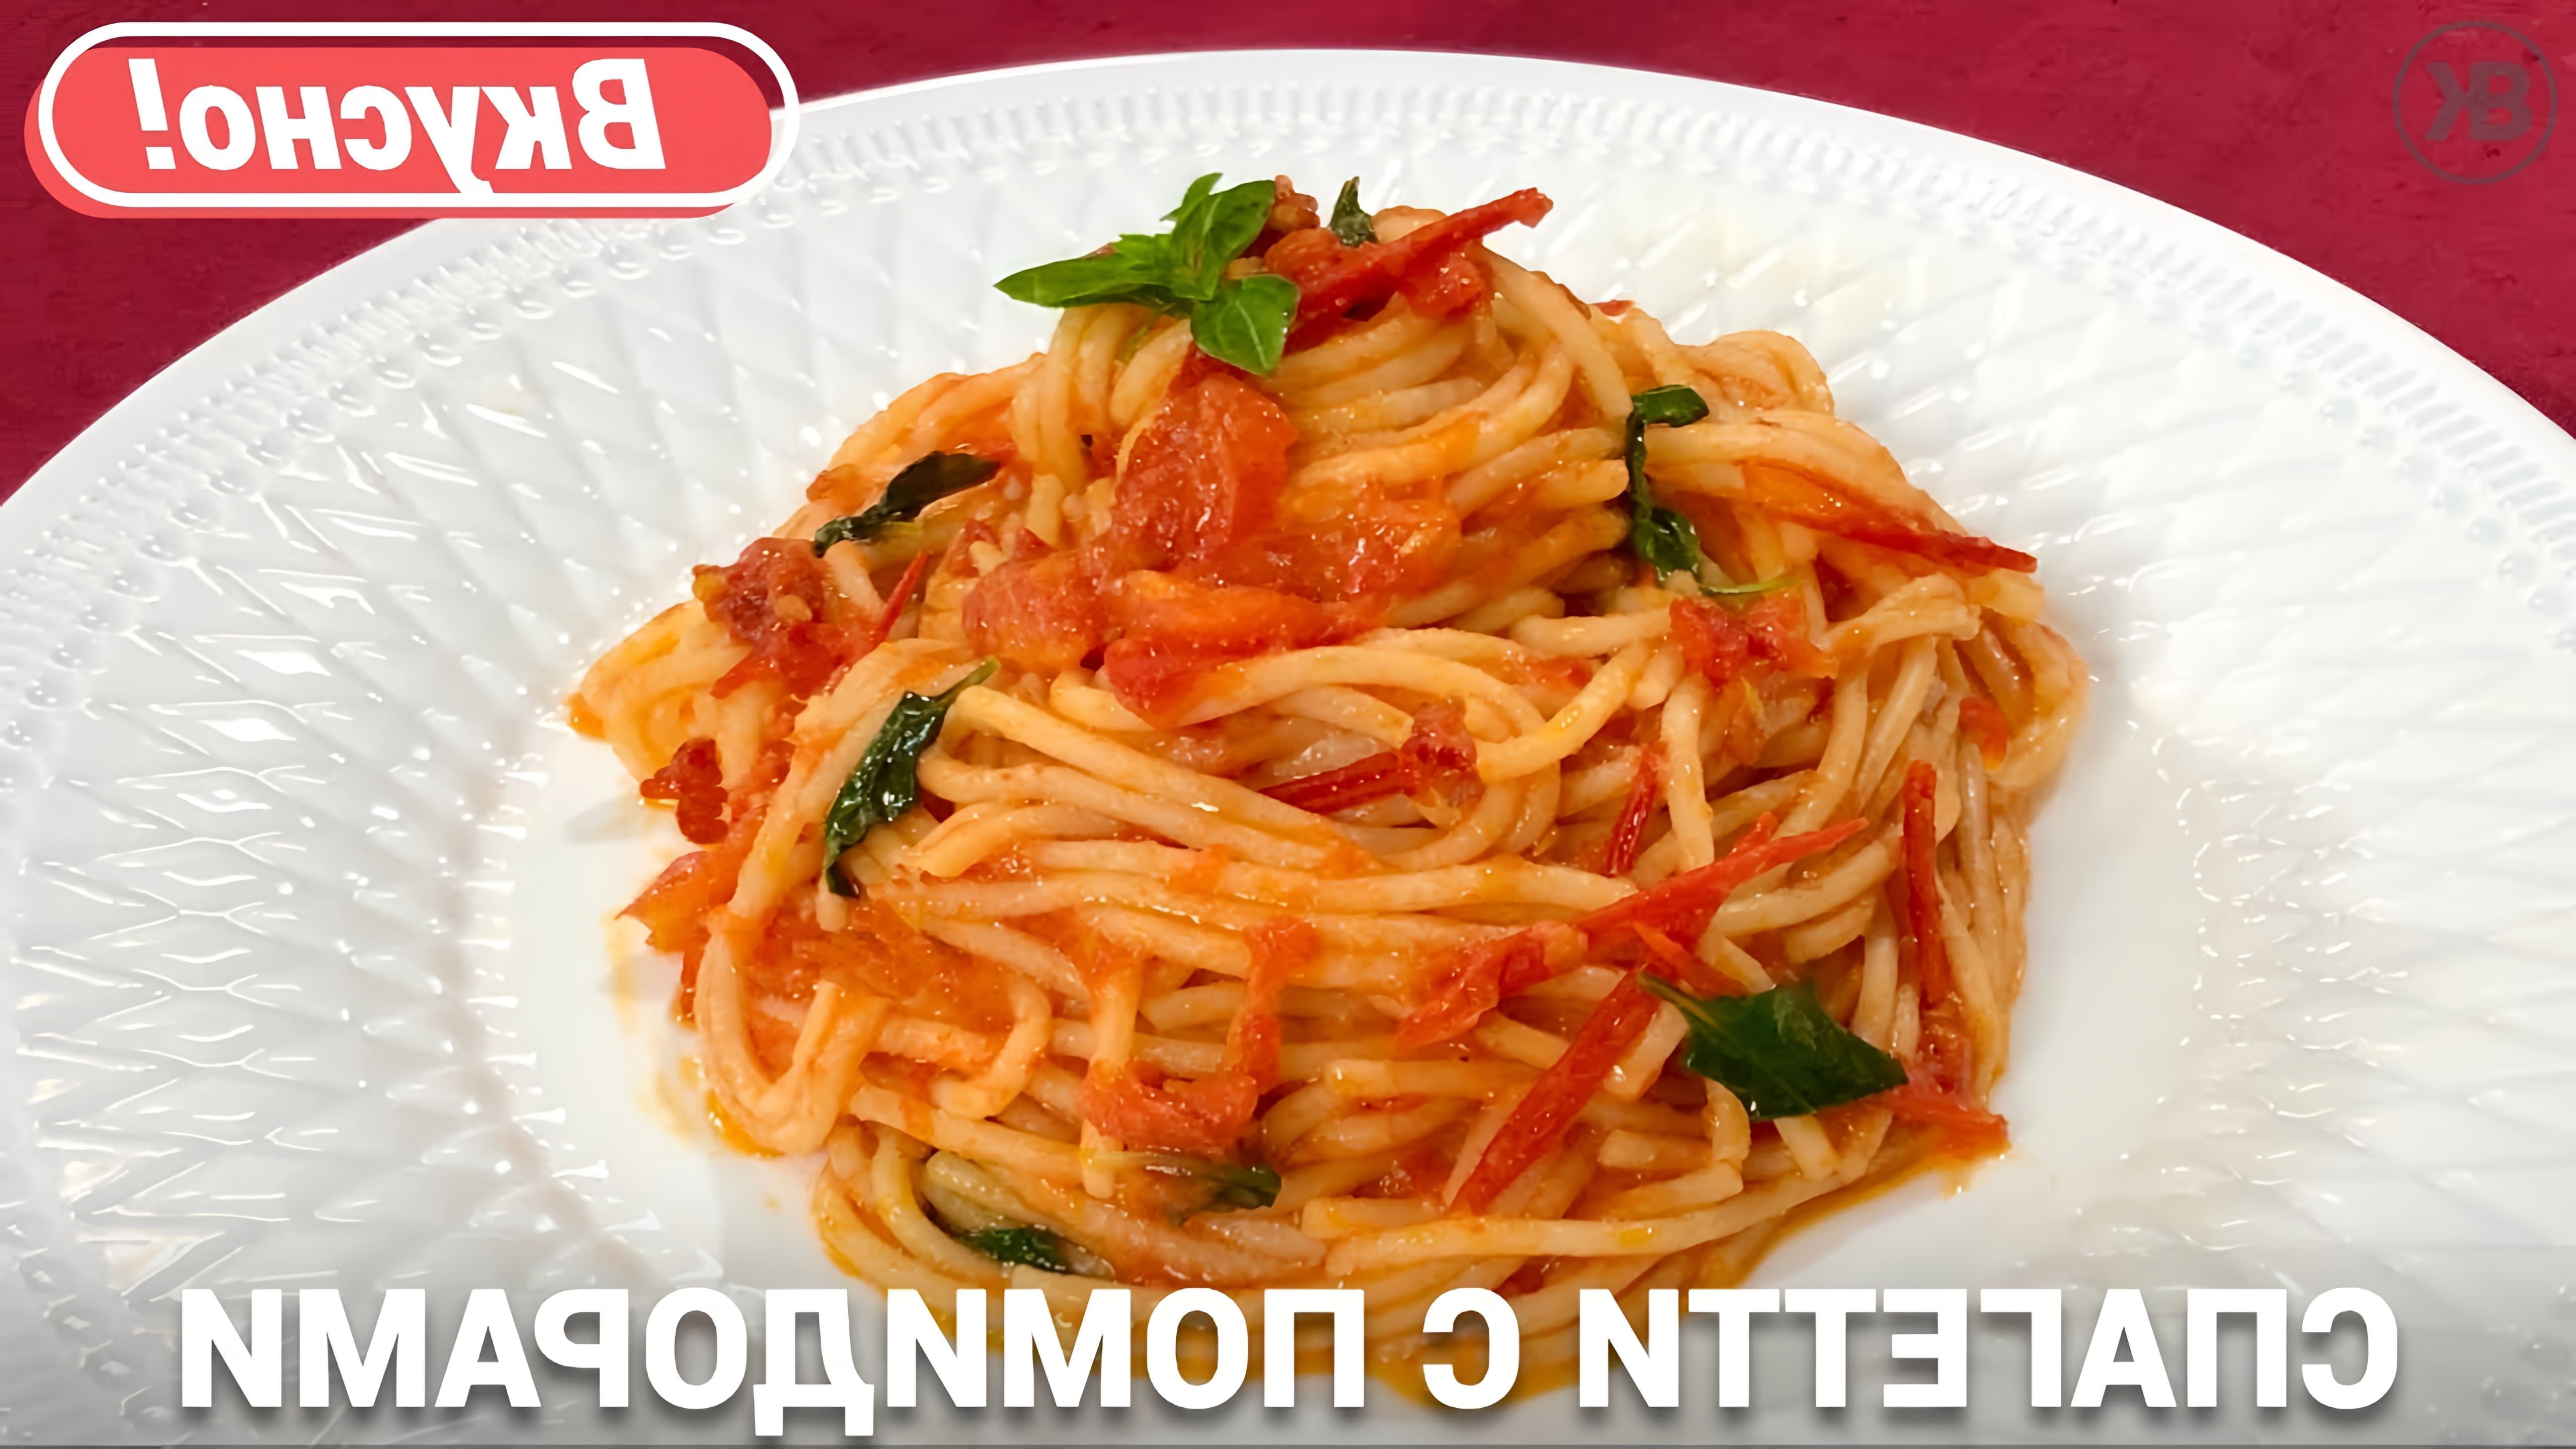 В этом видео демонстрируется процесс приготовления итальянского блюда - спагетти с помидорами и базиликом